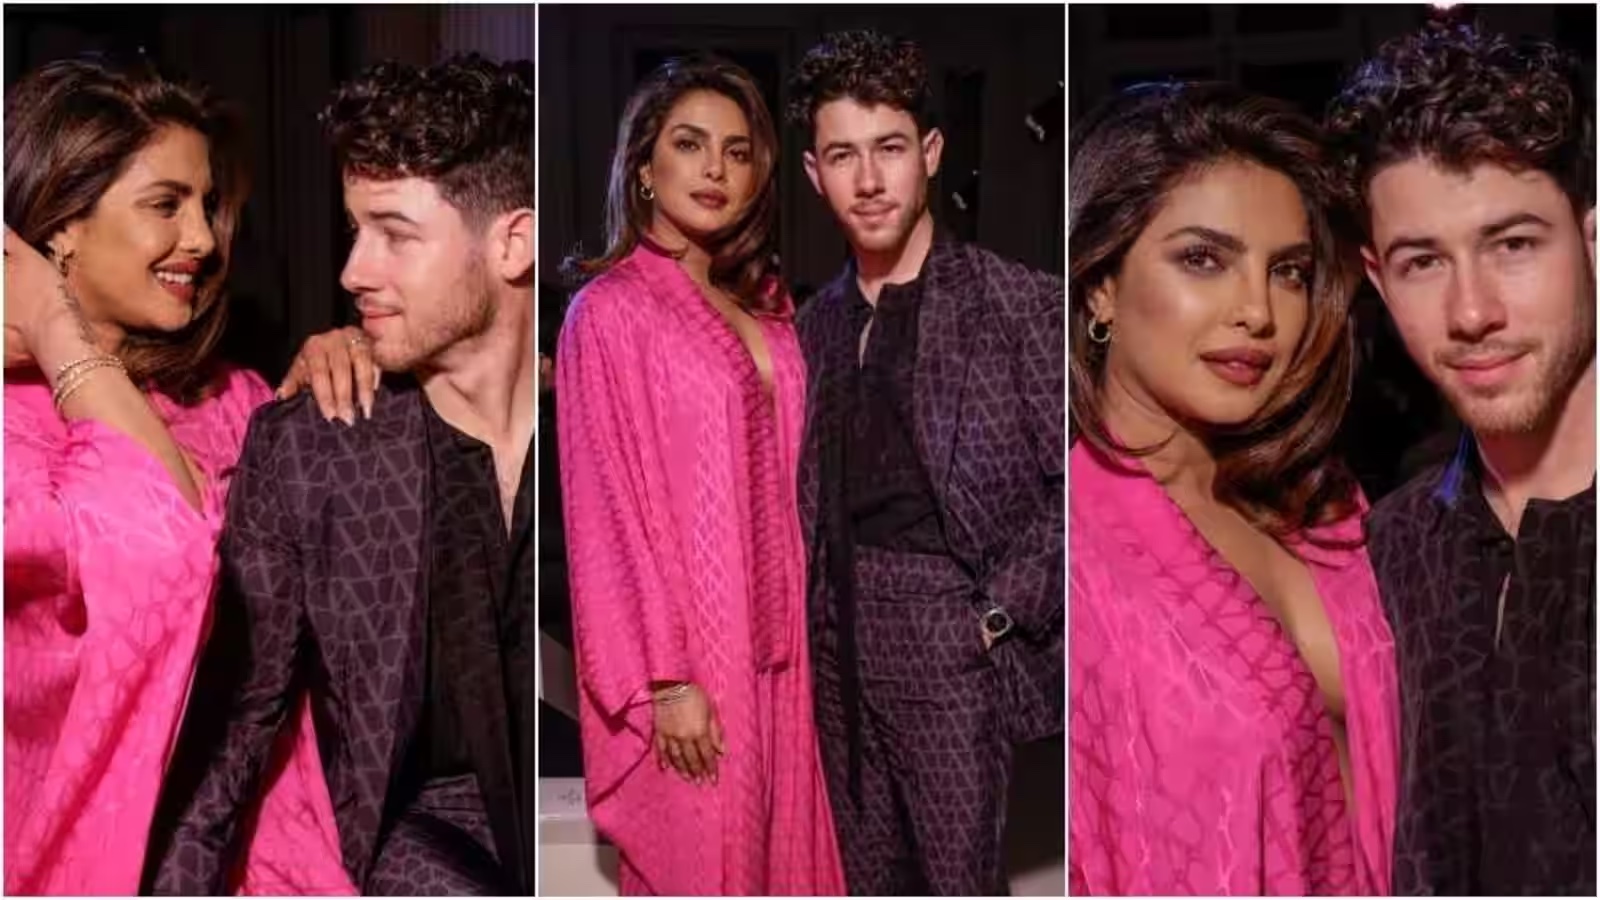 Priyanka Chopra Rocks Daring Hot Pink Ensemble on Night Out with Nick Jonas at Paris Fashion Week